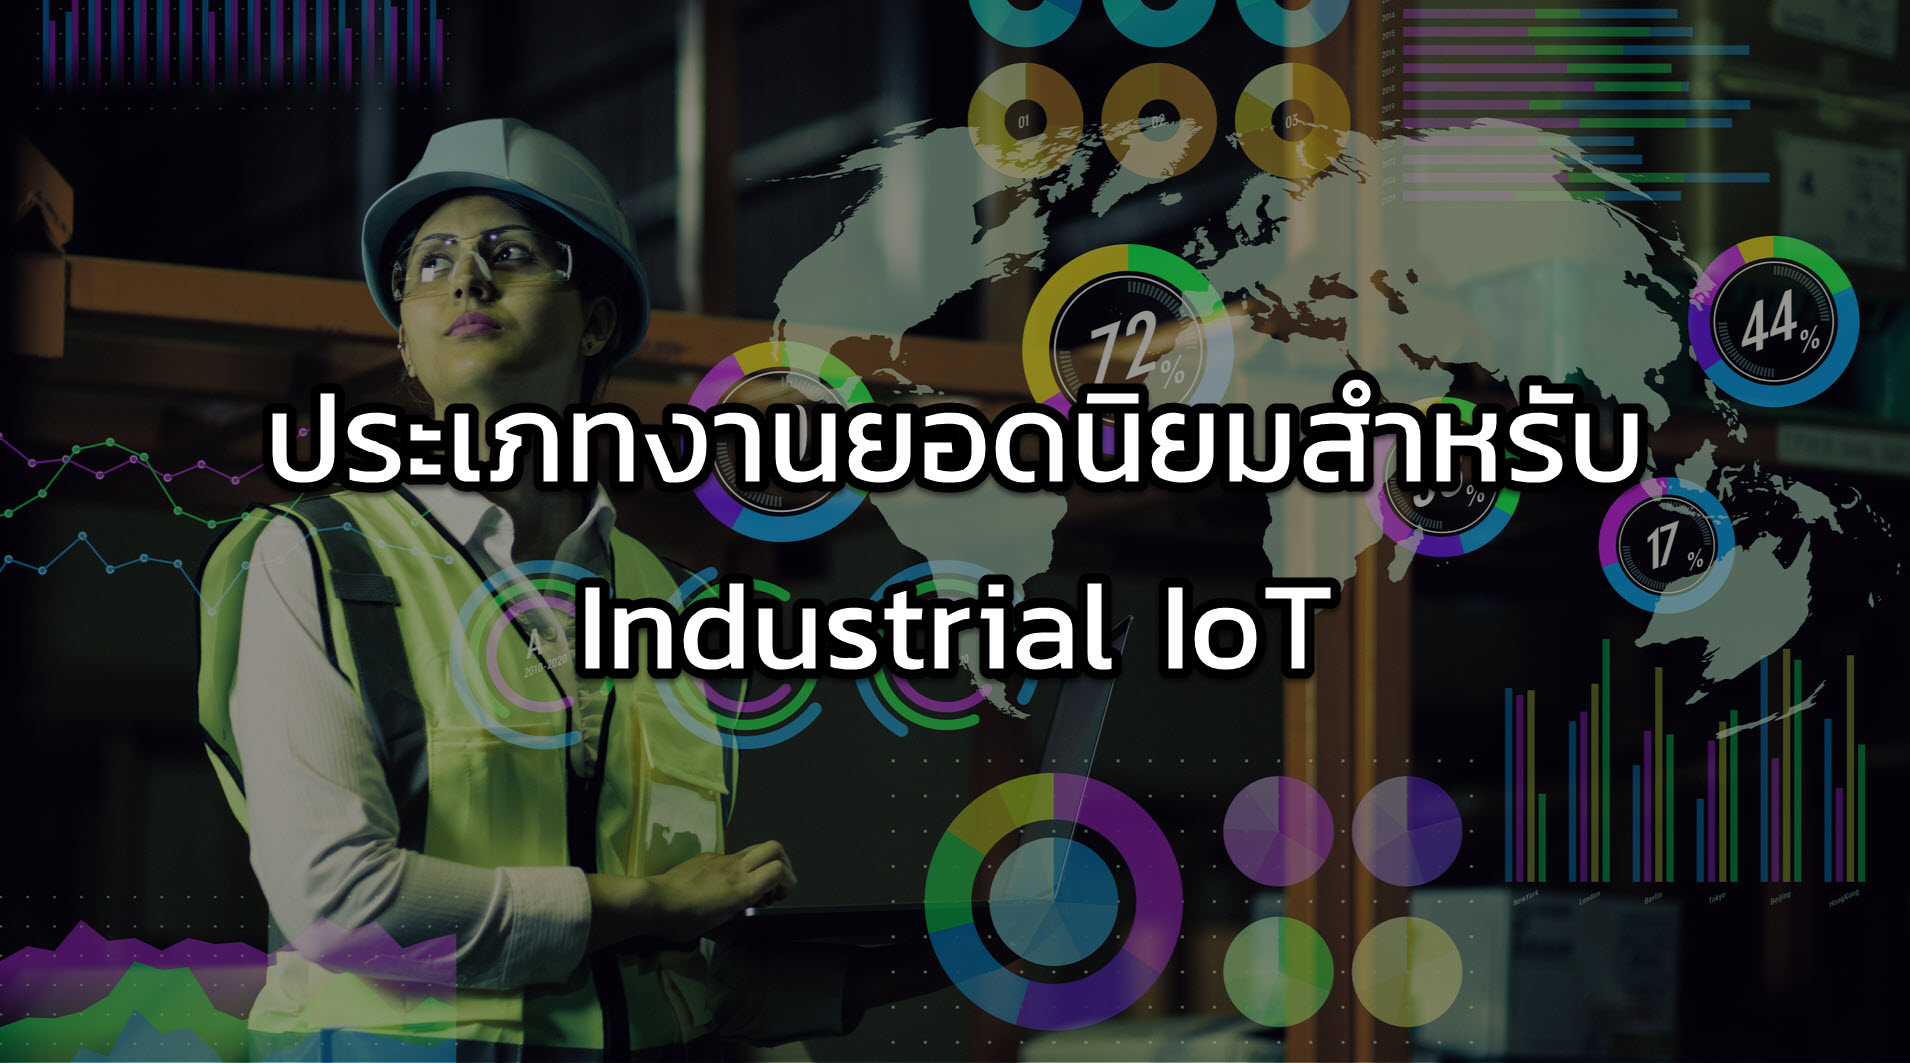 ประเภทงานที่นิยมใช้เทคโนโลยี Industrial IoT